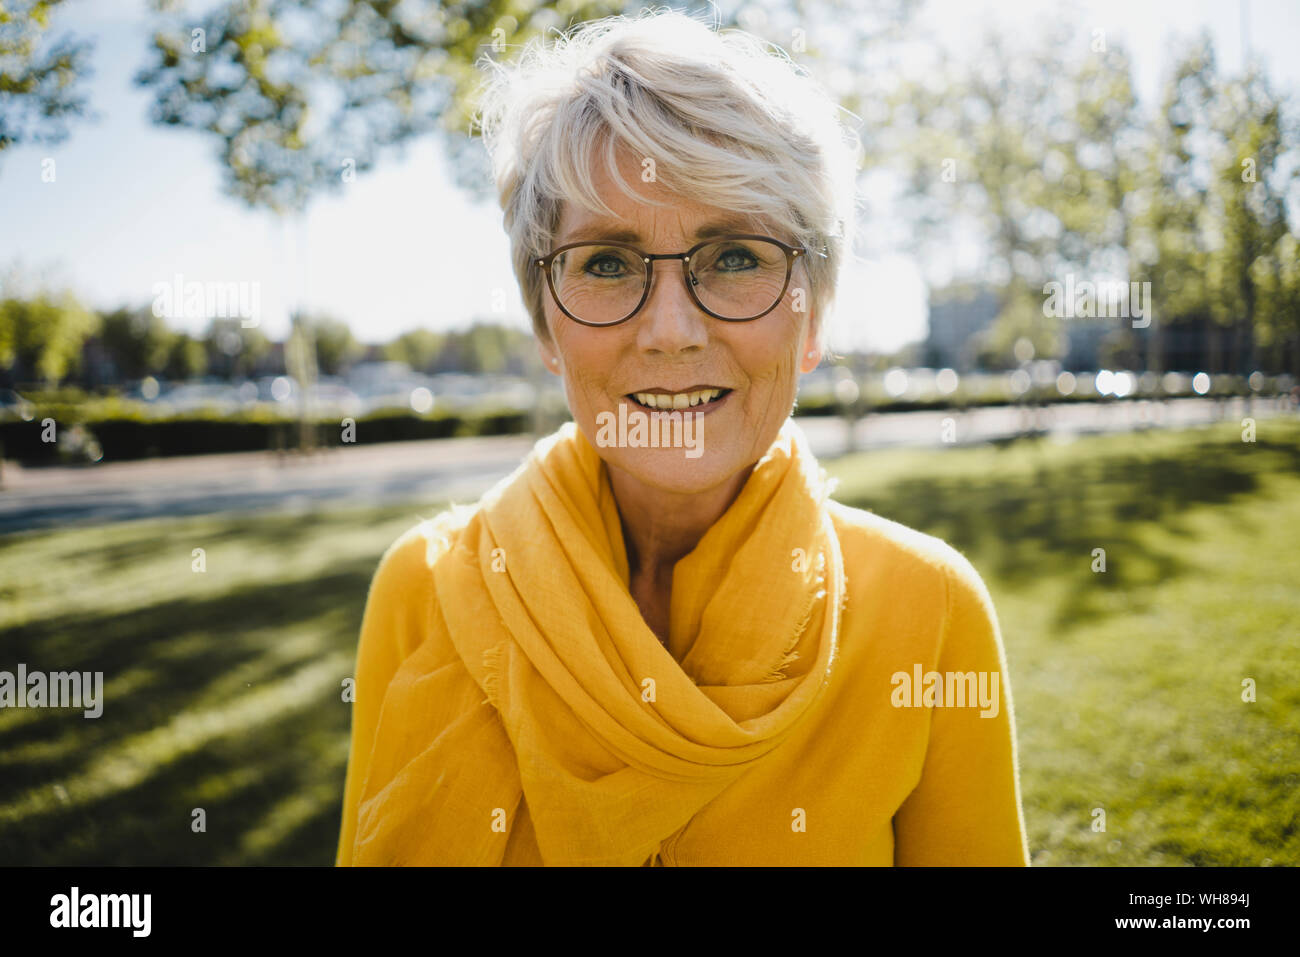 Ritratto di sorridere donna matura con i capelli grigi con gli occhiali e abiti di colore giallo Foto Stock